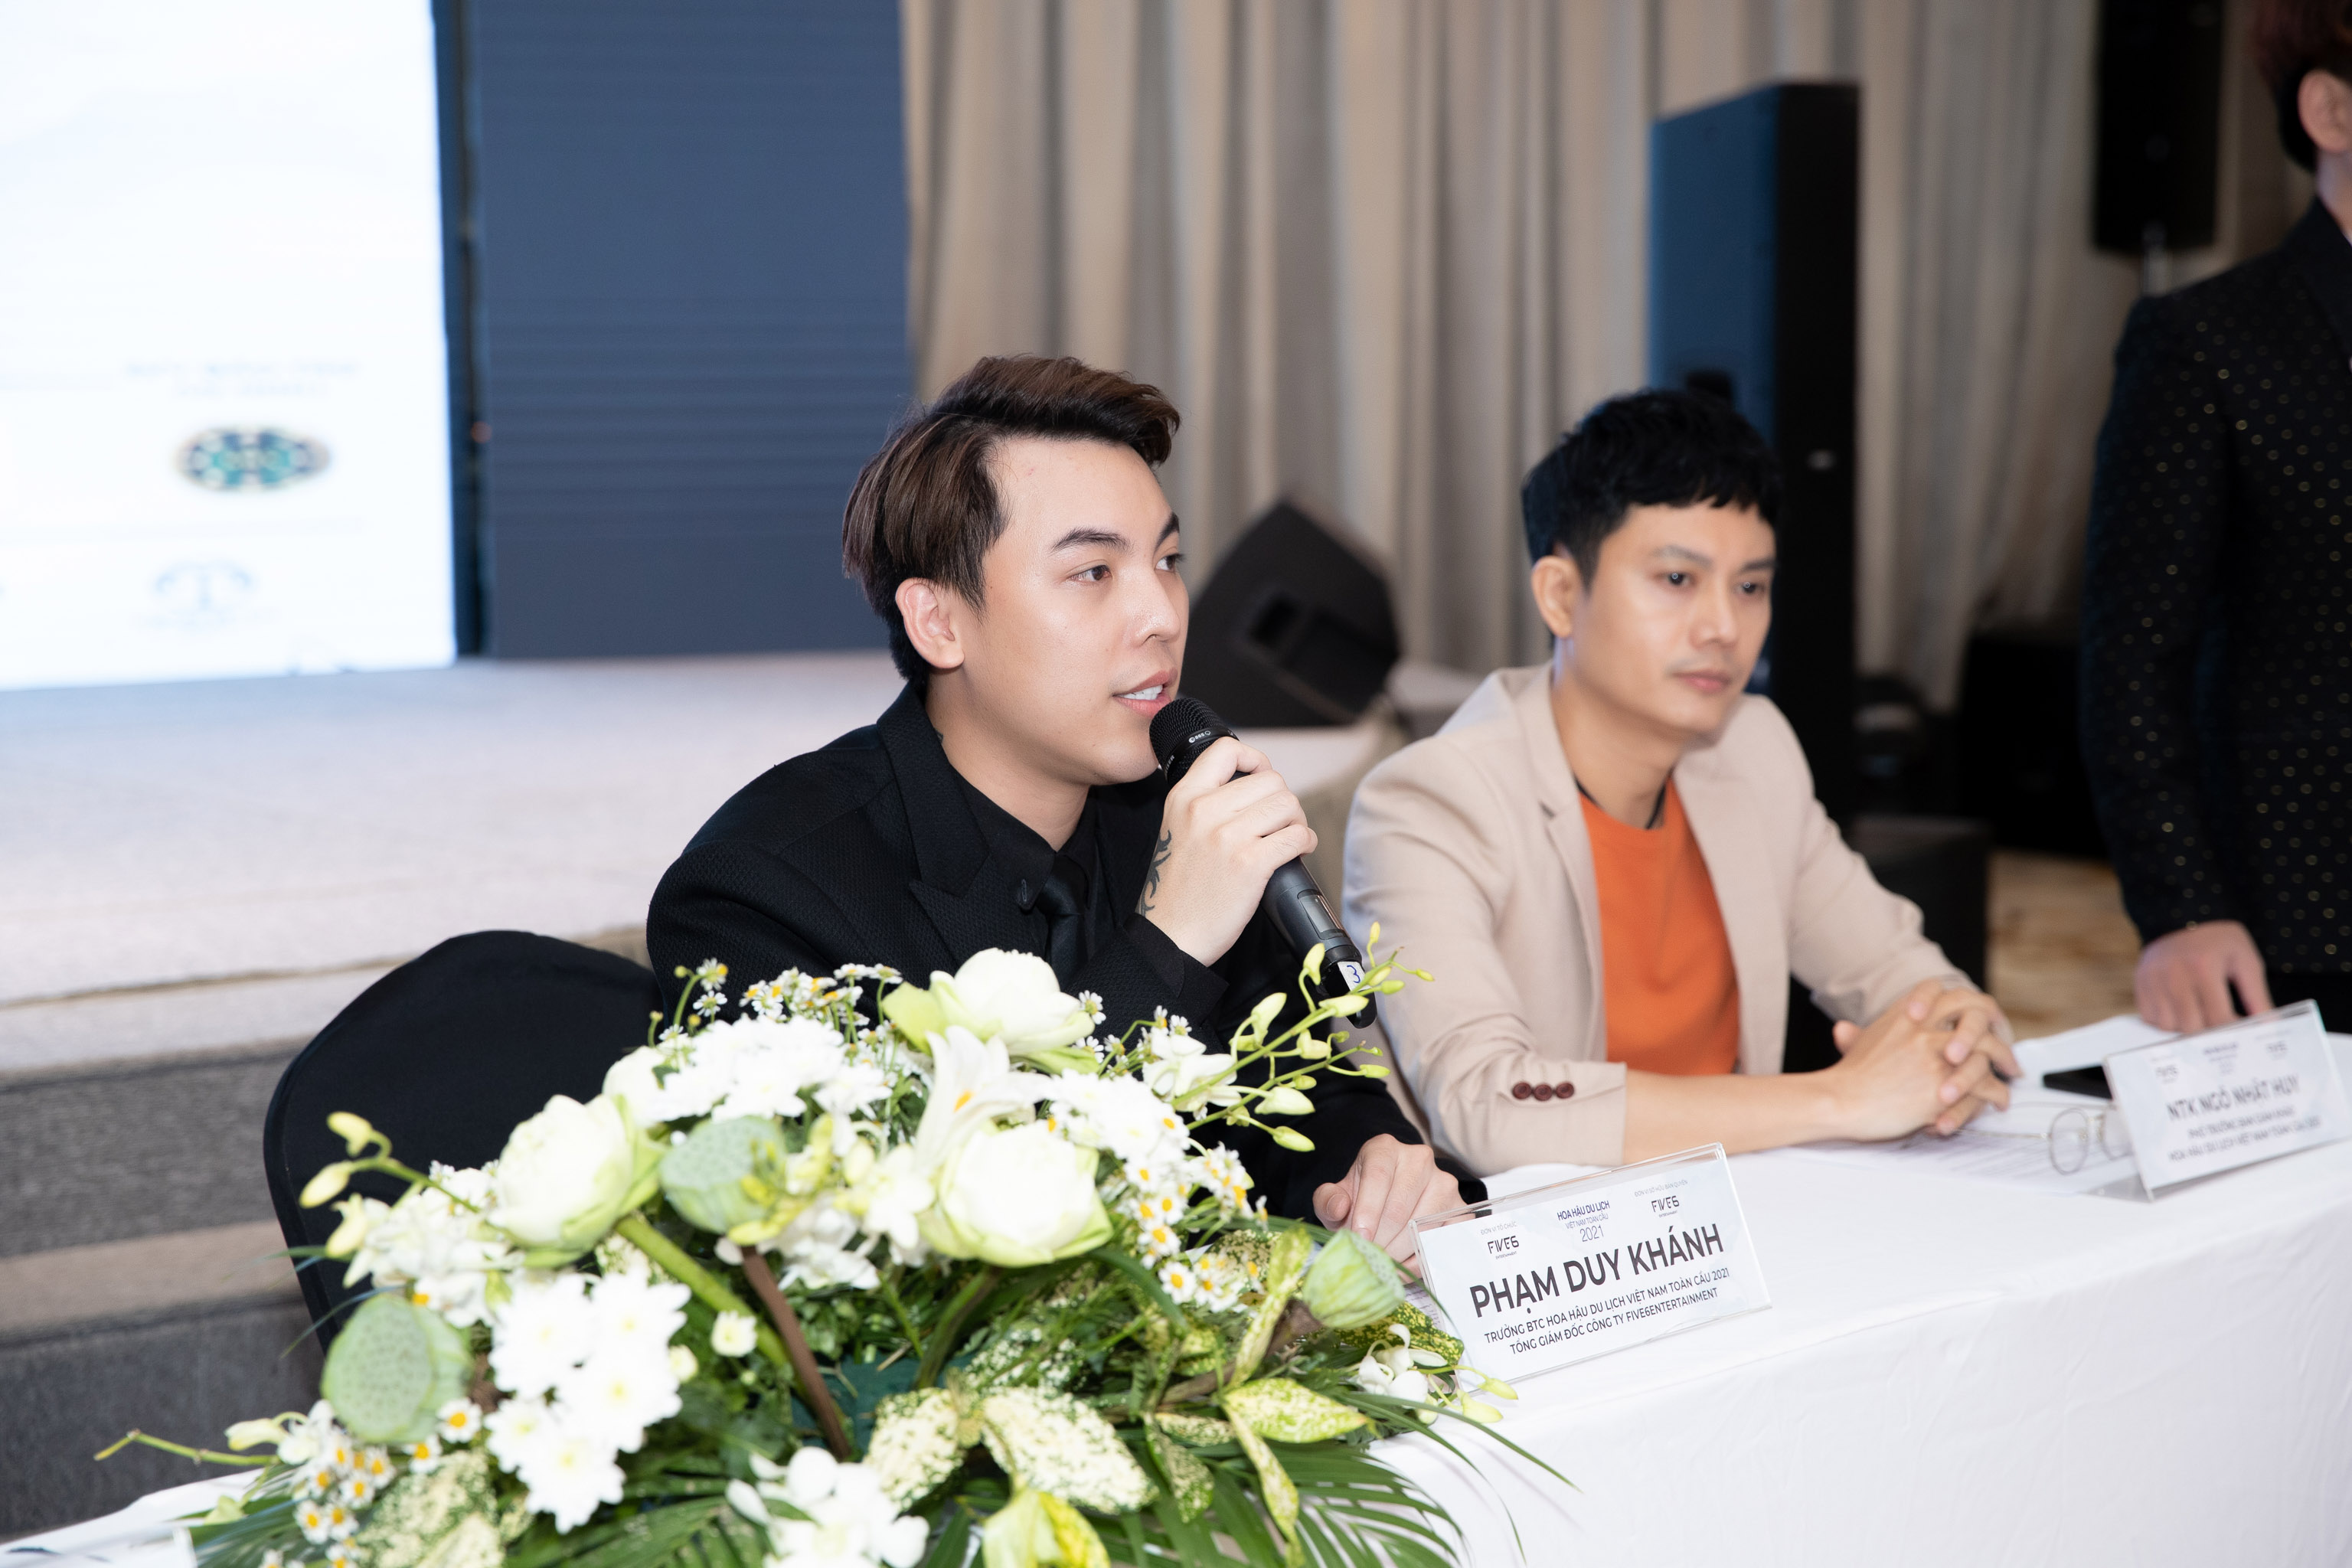 Hoa hậu Du lịch Việt Nam toàn cầu 2021 tổ chức tuyển sinh online vì Covid-19 - ảnh 2